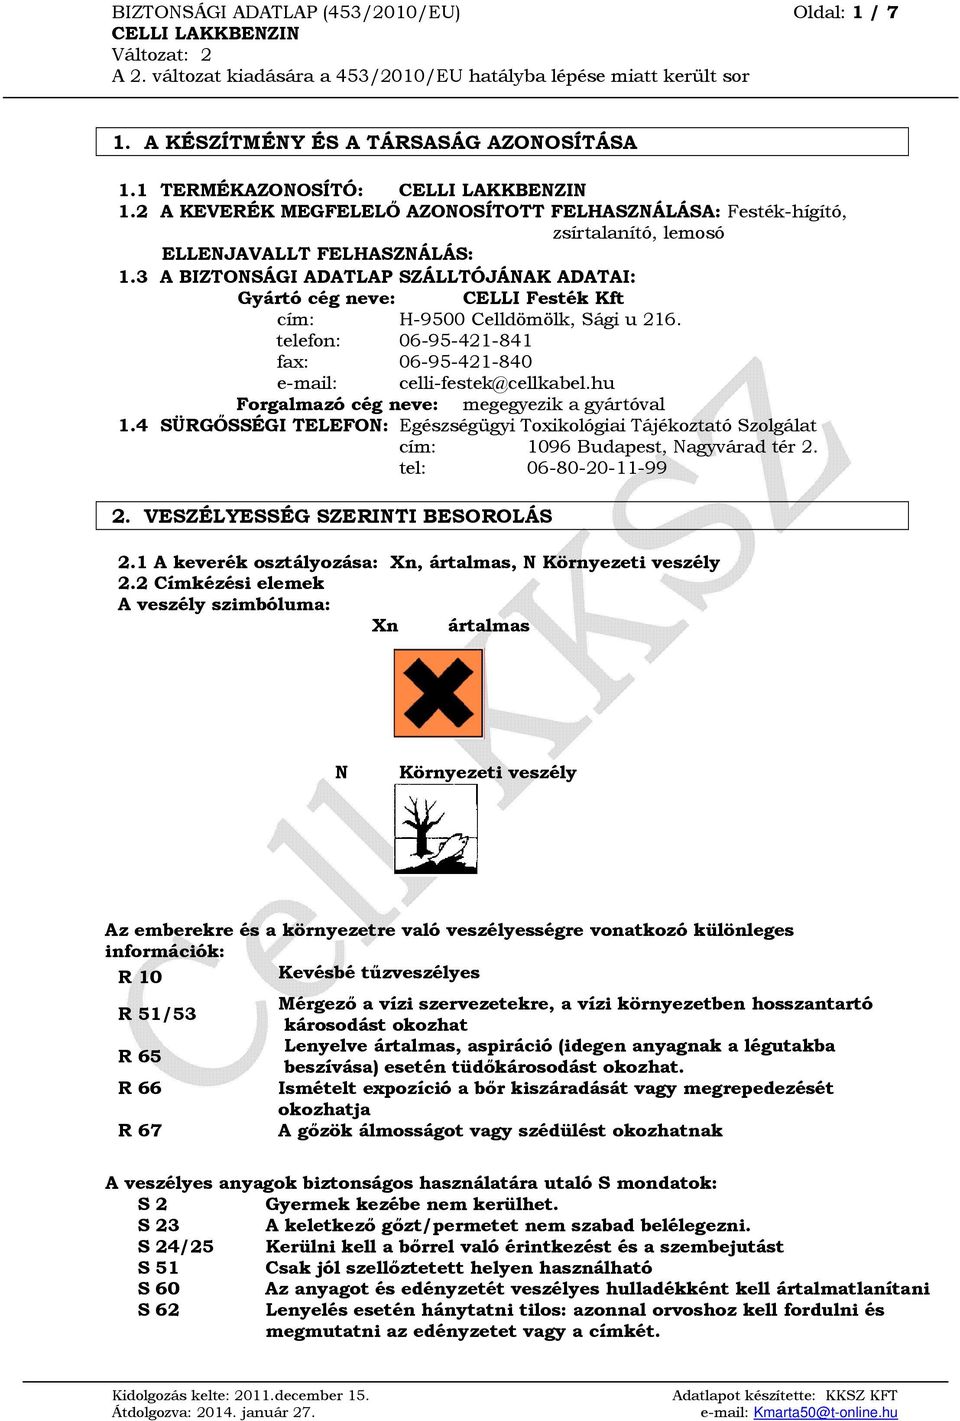 BIZTONSÁGI ADATLAP (453/2010/EU) Oldal: 1 / 7 CELLI LAKKBENZIN Változat: 2  A 2. változat kiadására a 453/2010/EU hatályba lépése miatt került sor -  PDF Ingyenes letöltés